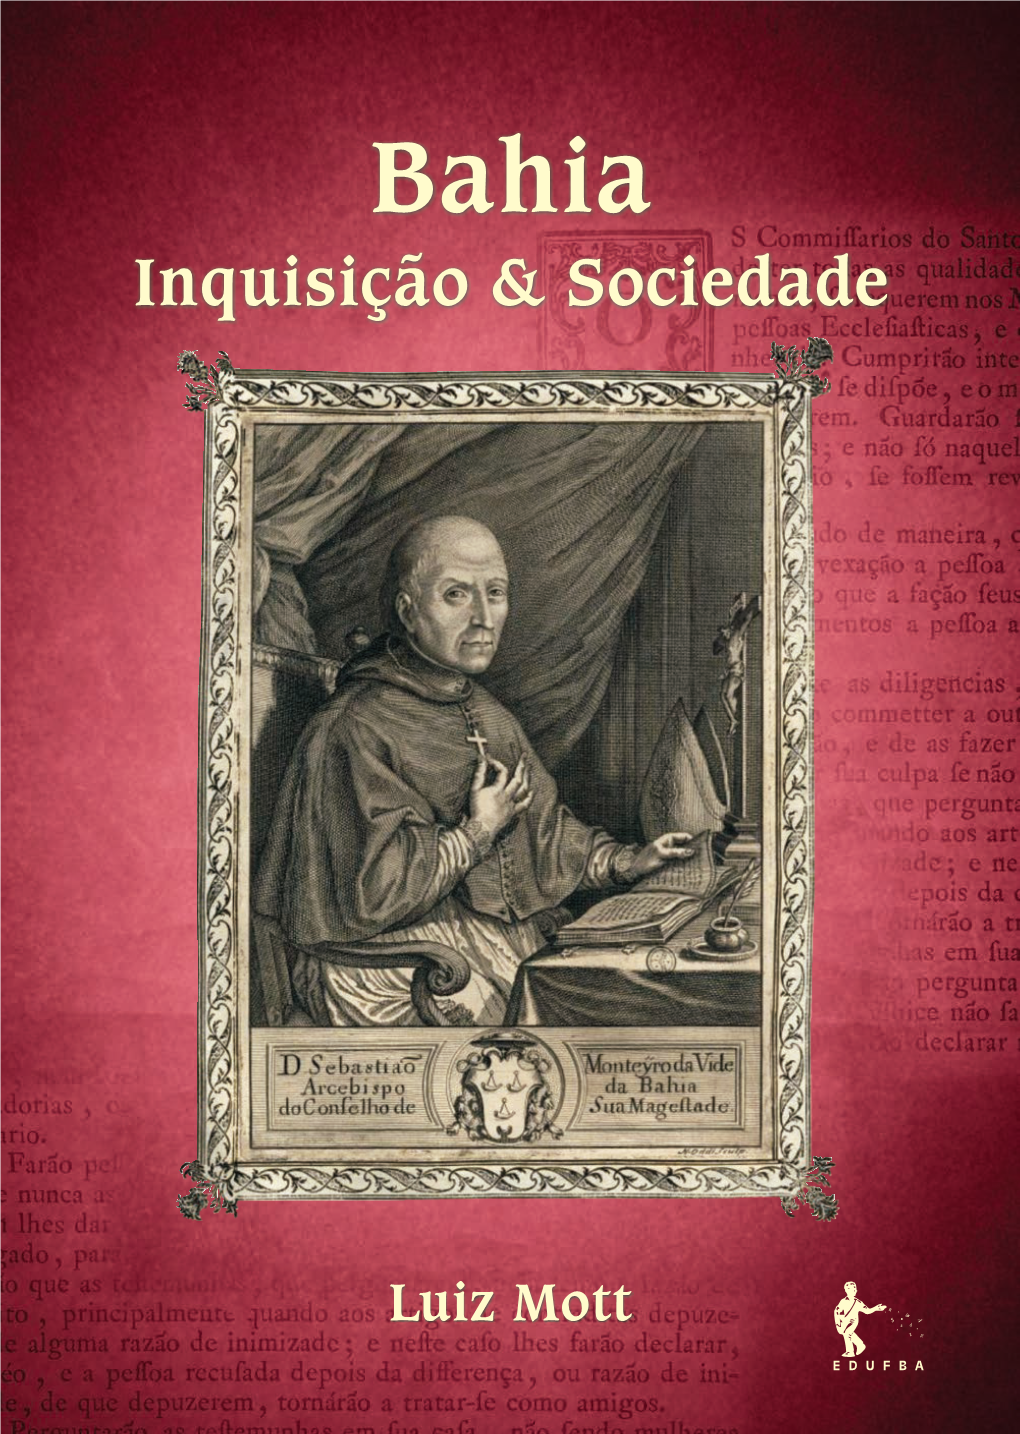 Bahia: Inquisição & Sociedade